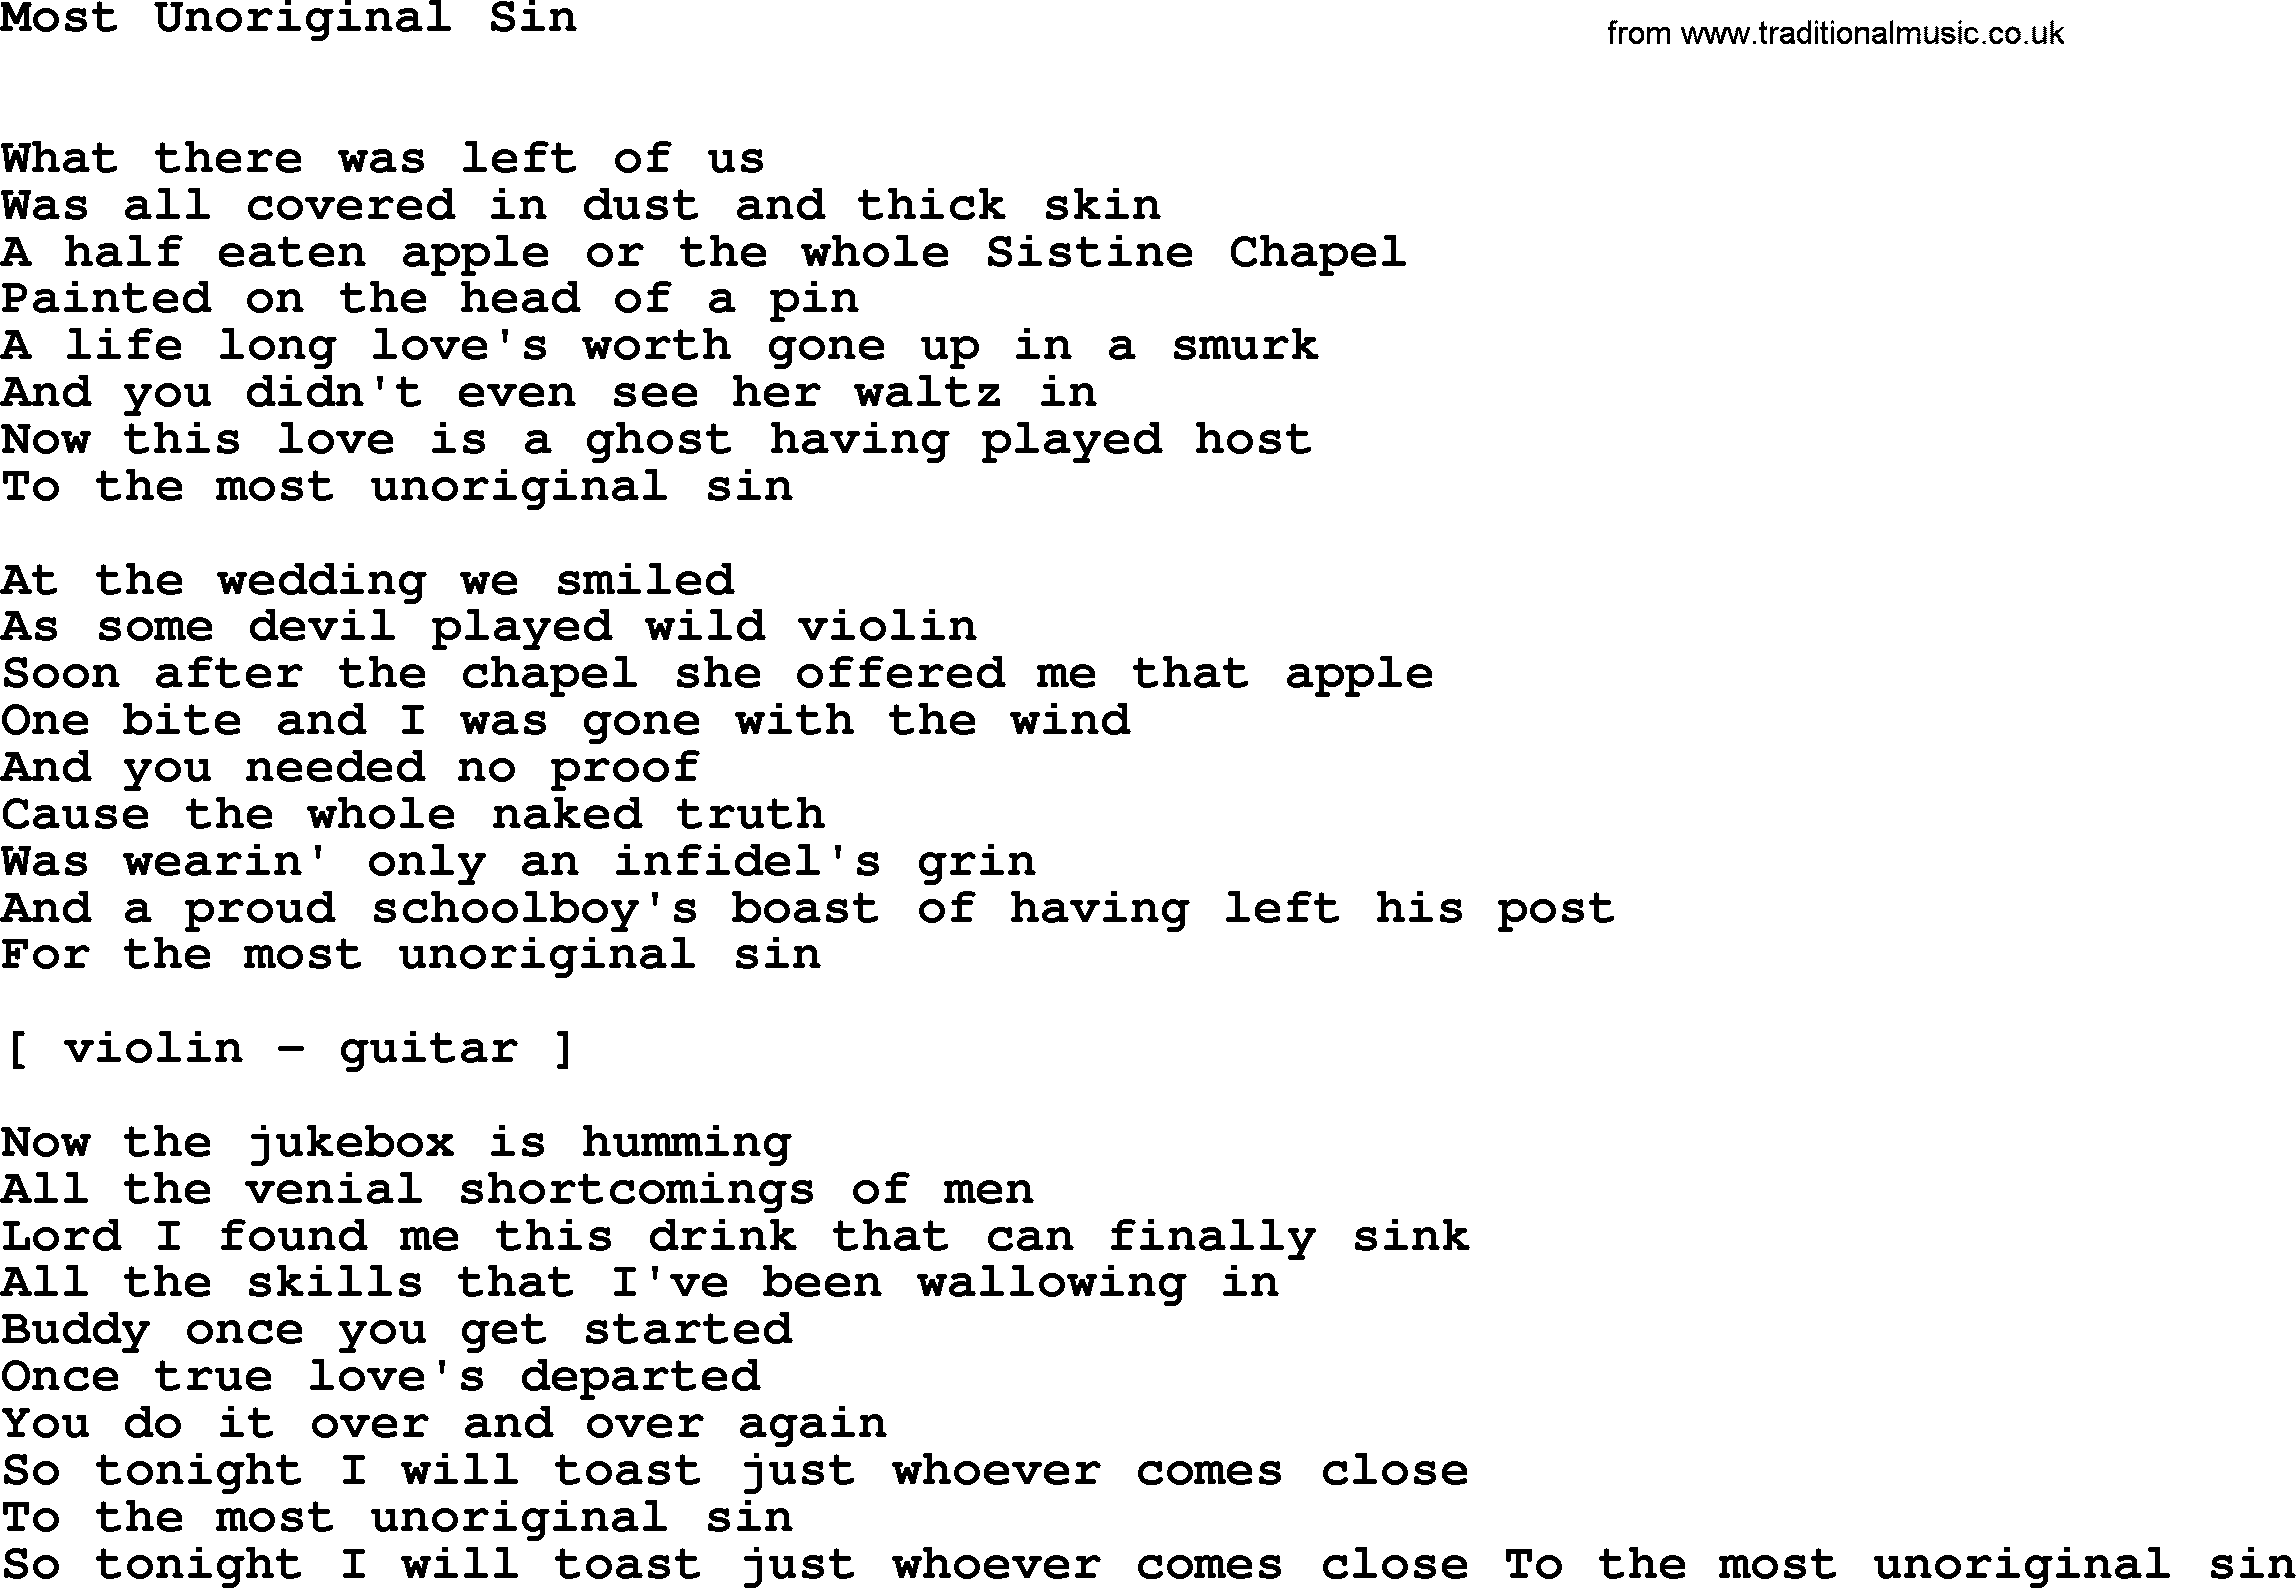 Willie Nelson song: Most Unoriginal Sin lyrics